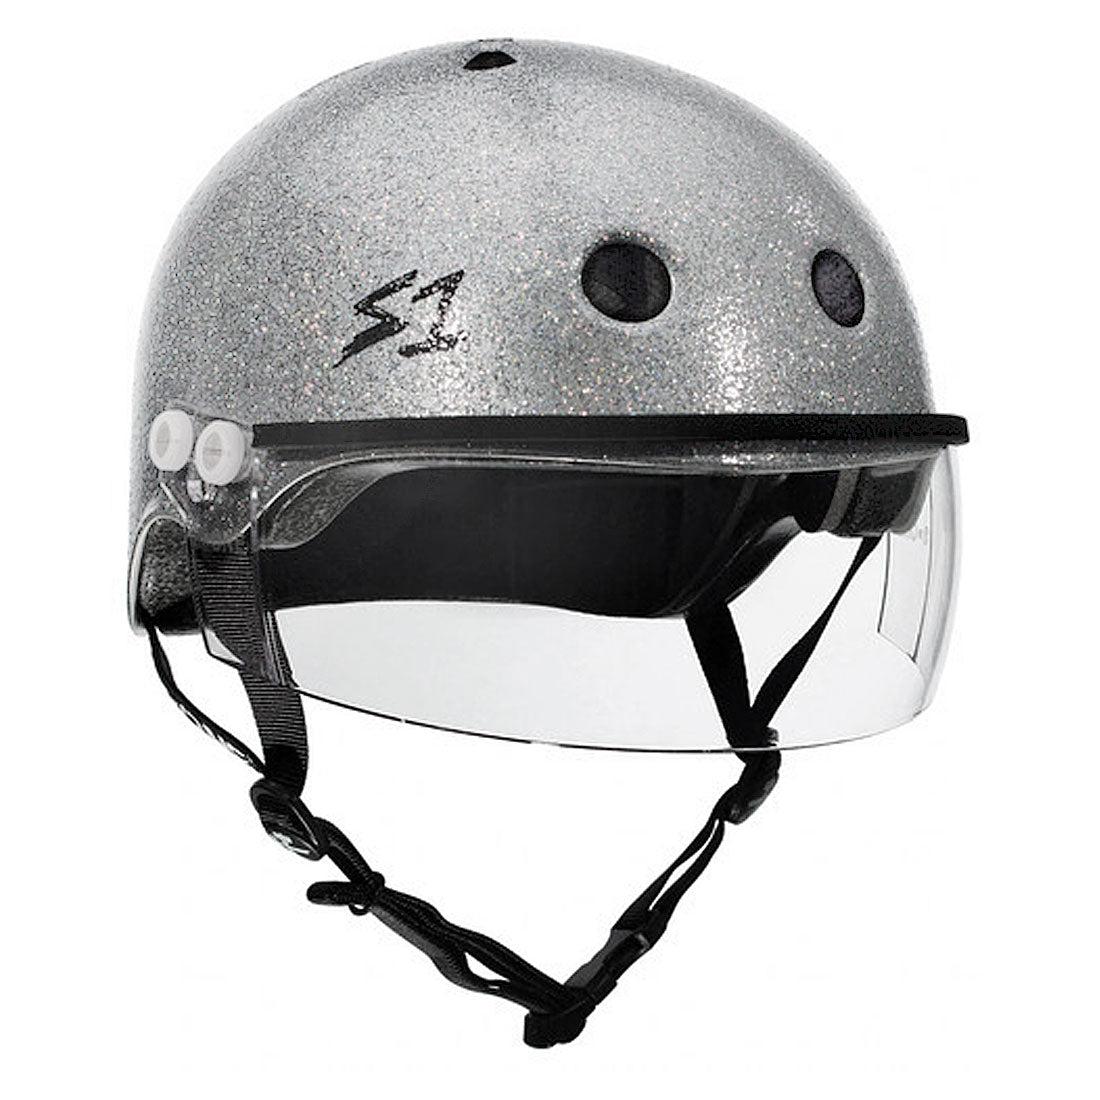 S-One Visor Lifer Helmet - Silver Glitter Helmets